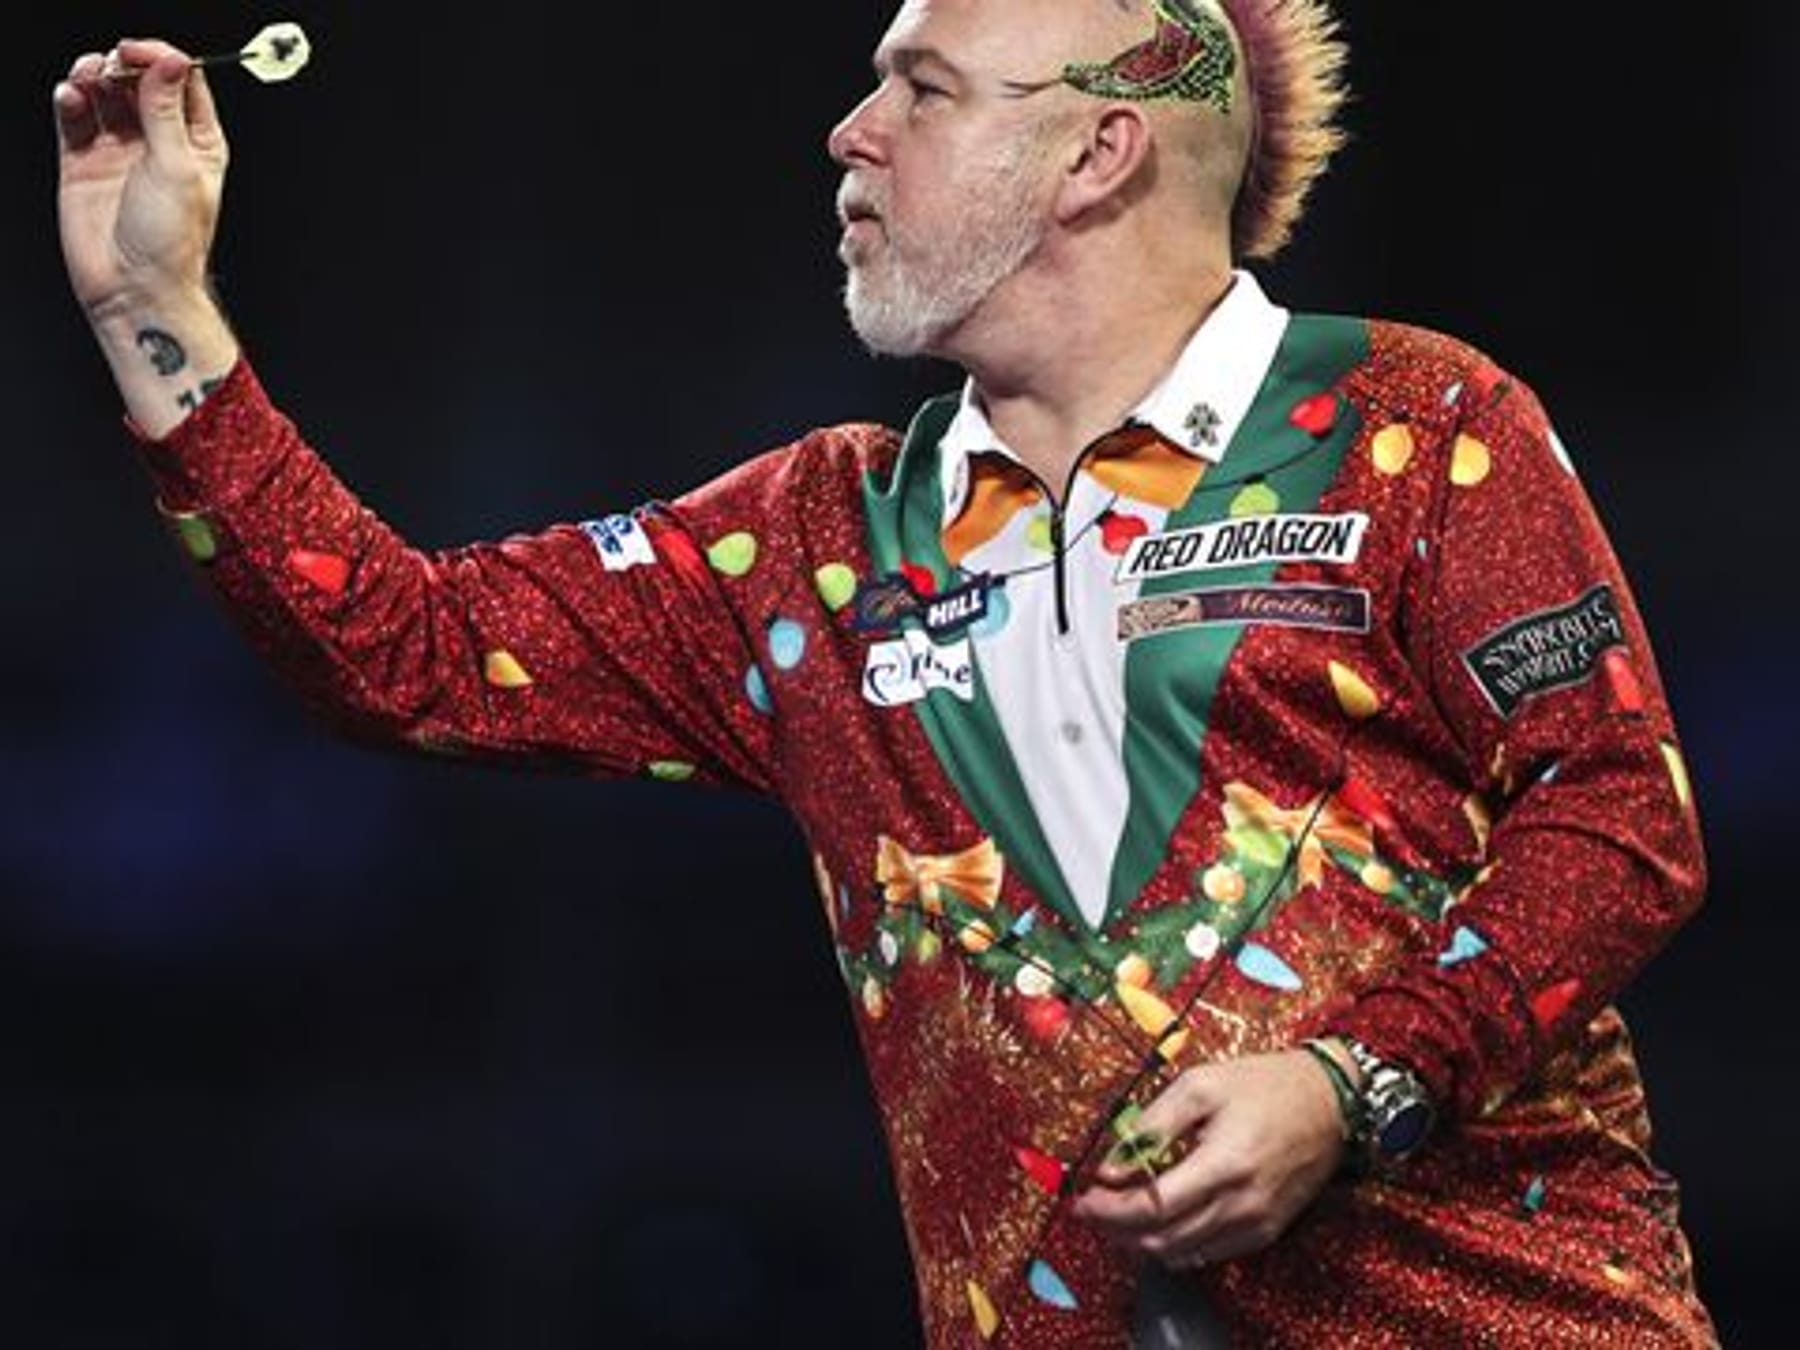 Spektakel in London Wright gewinnt Darts-WM-Auftakt im Weihnachtsoutfit